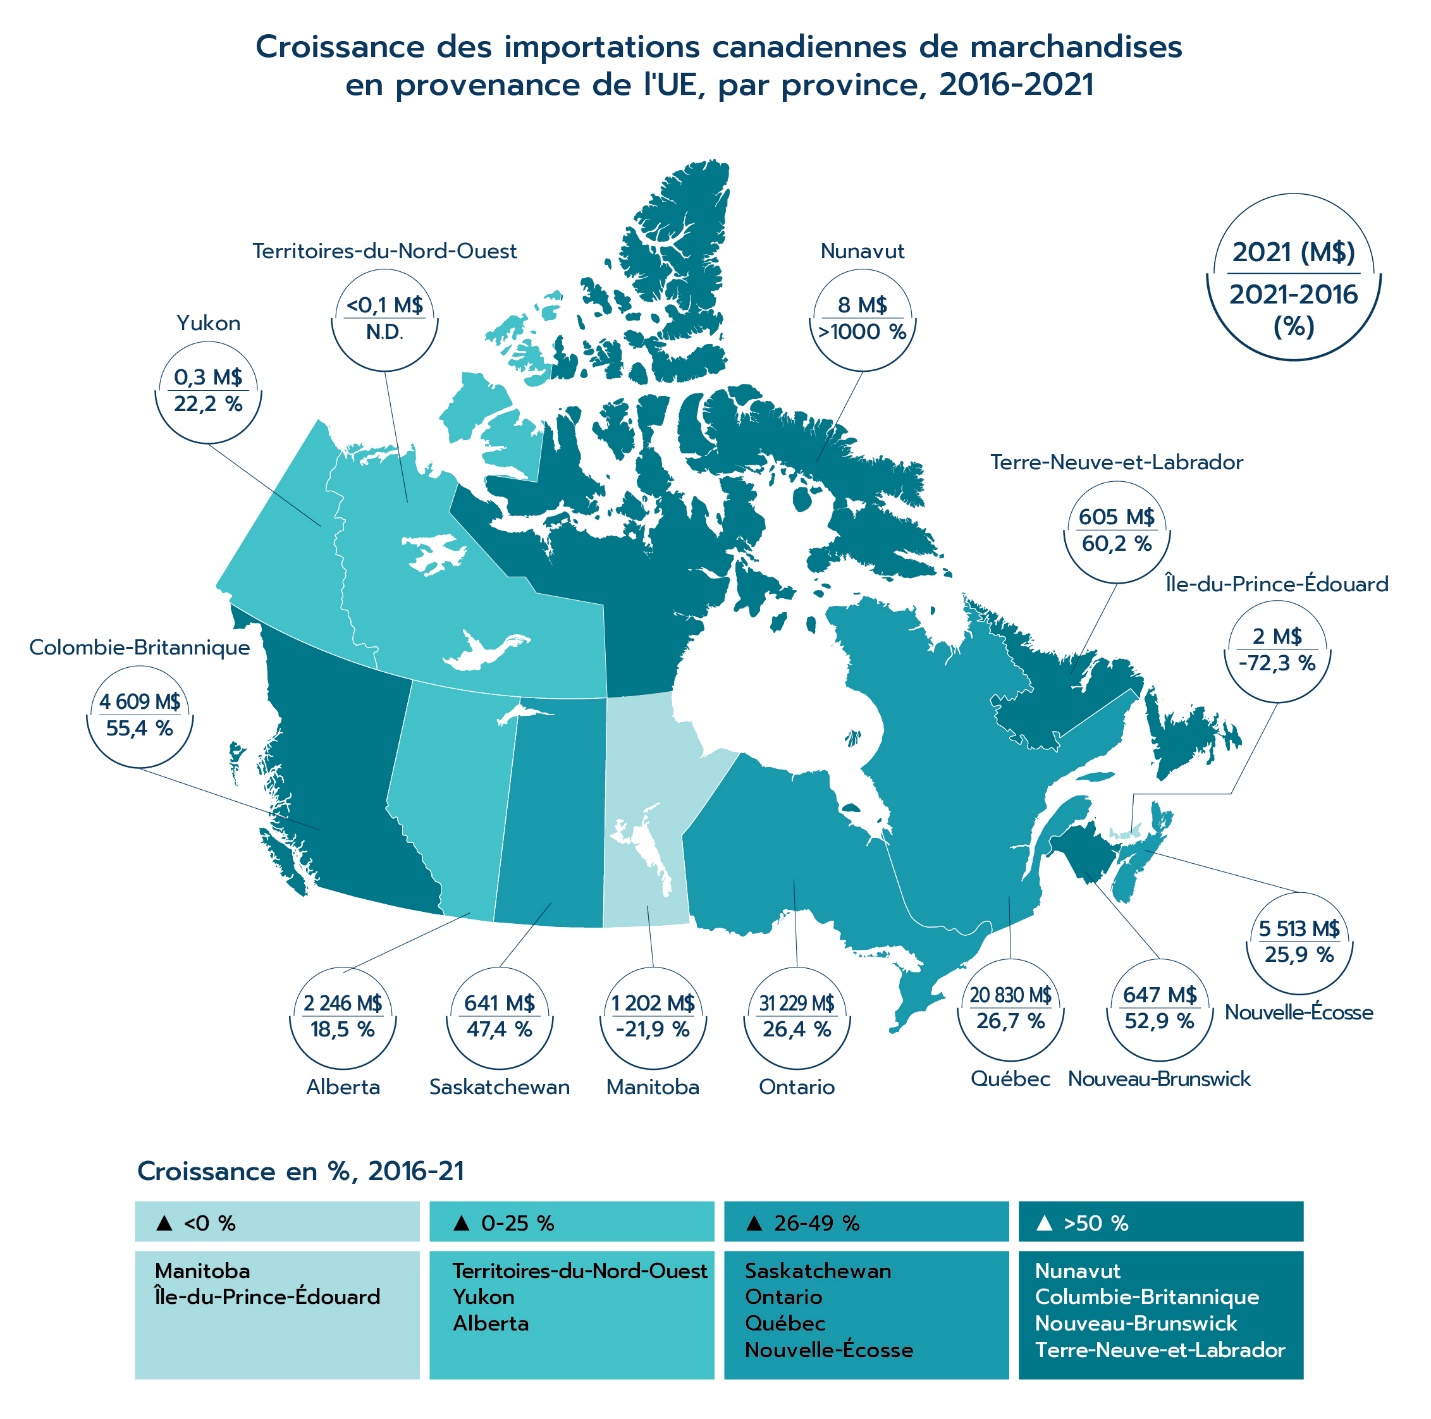 Croissance des importations canadiennes de marchandises en provenance de l'UE, par province, 2016-2021